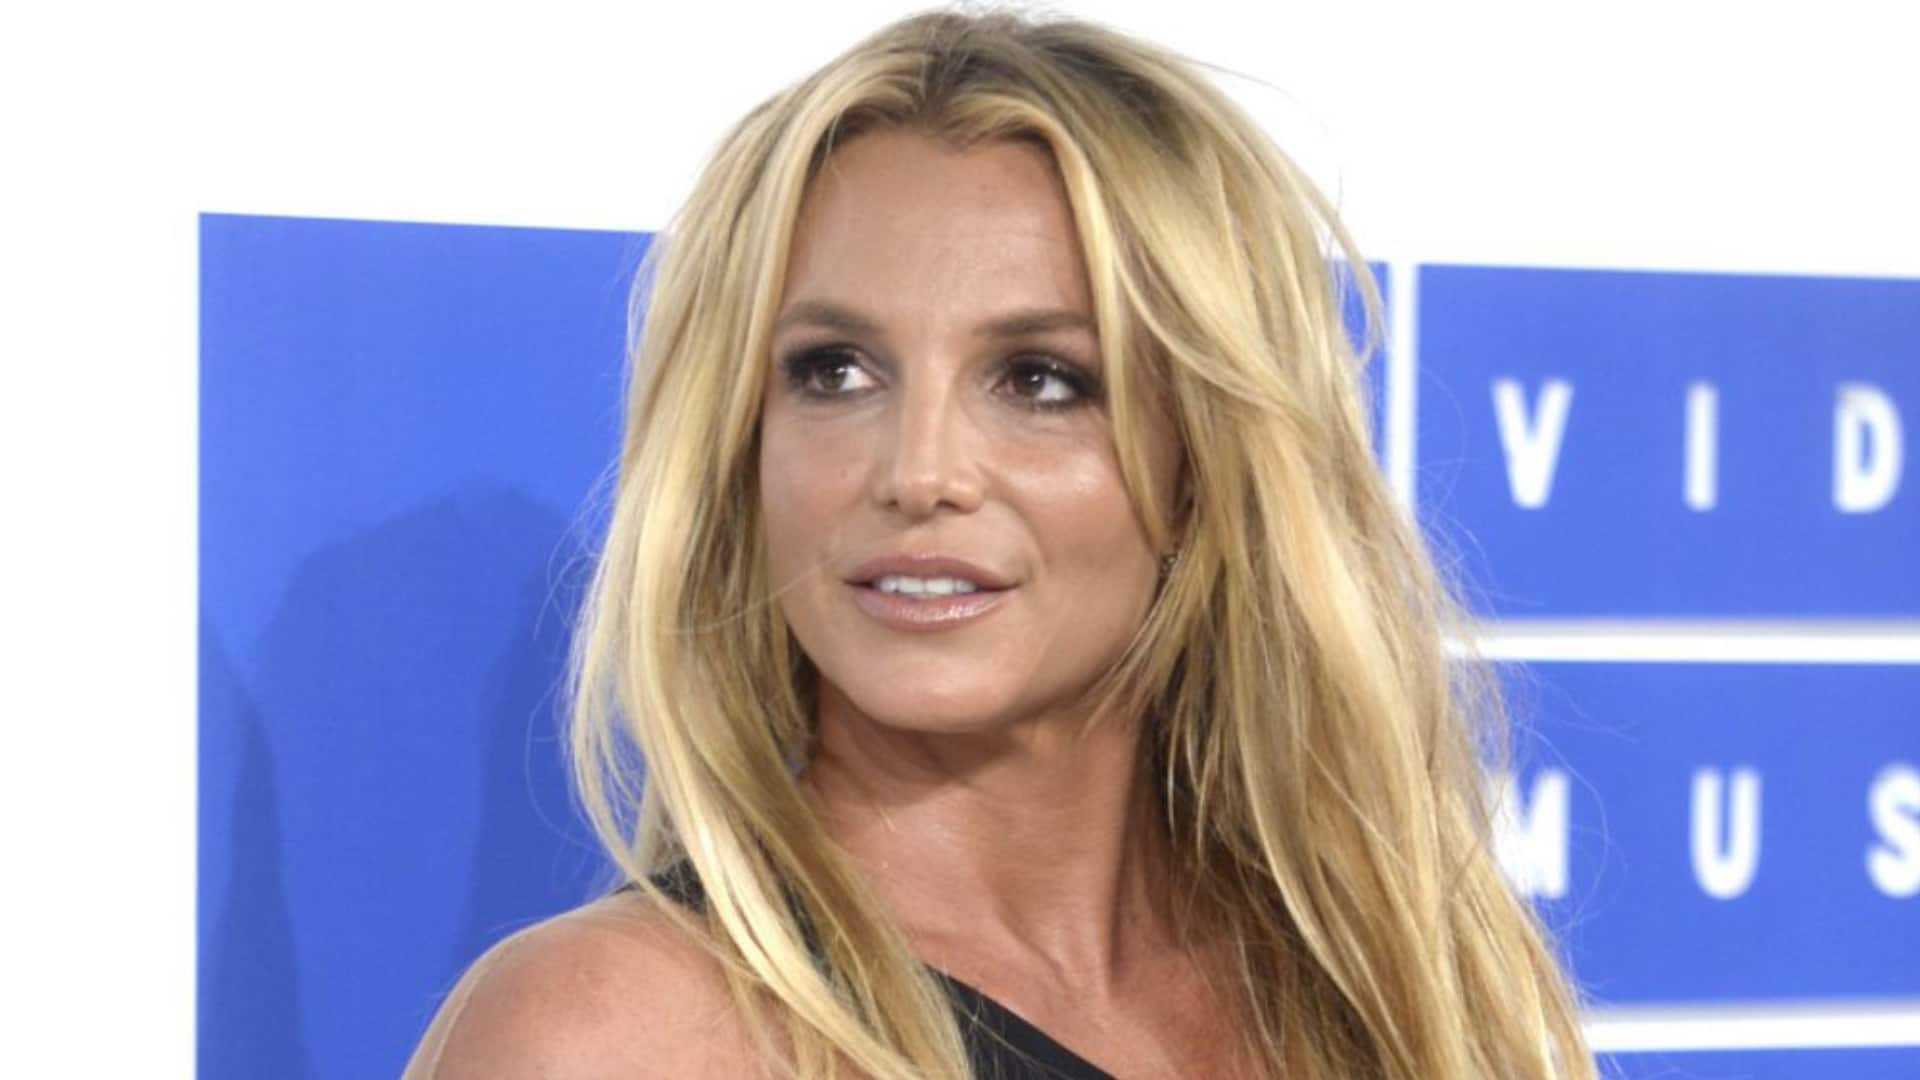 Britney Spears : giflée par le garde du corps d'une star française, la situation se détaille - titre insta : "Il m'a quasiment mise à terre..." Britney Spears violemment giflée par le garde du corps d'une star française ! (visuel : britney) légende : "Il m'a quasiment mise à terre..."